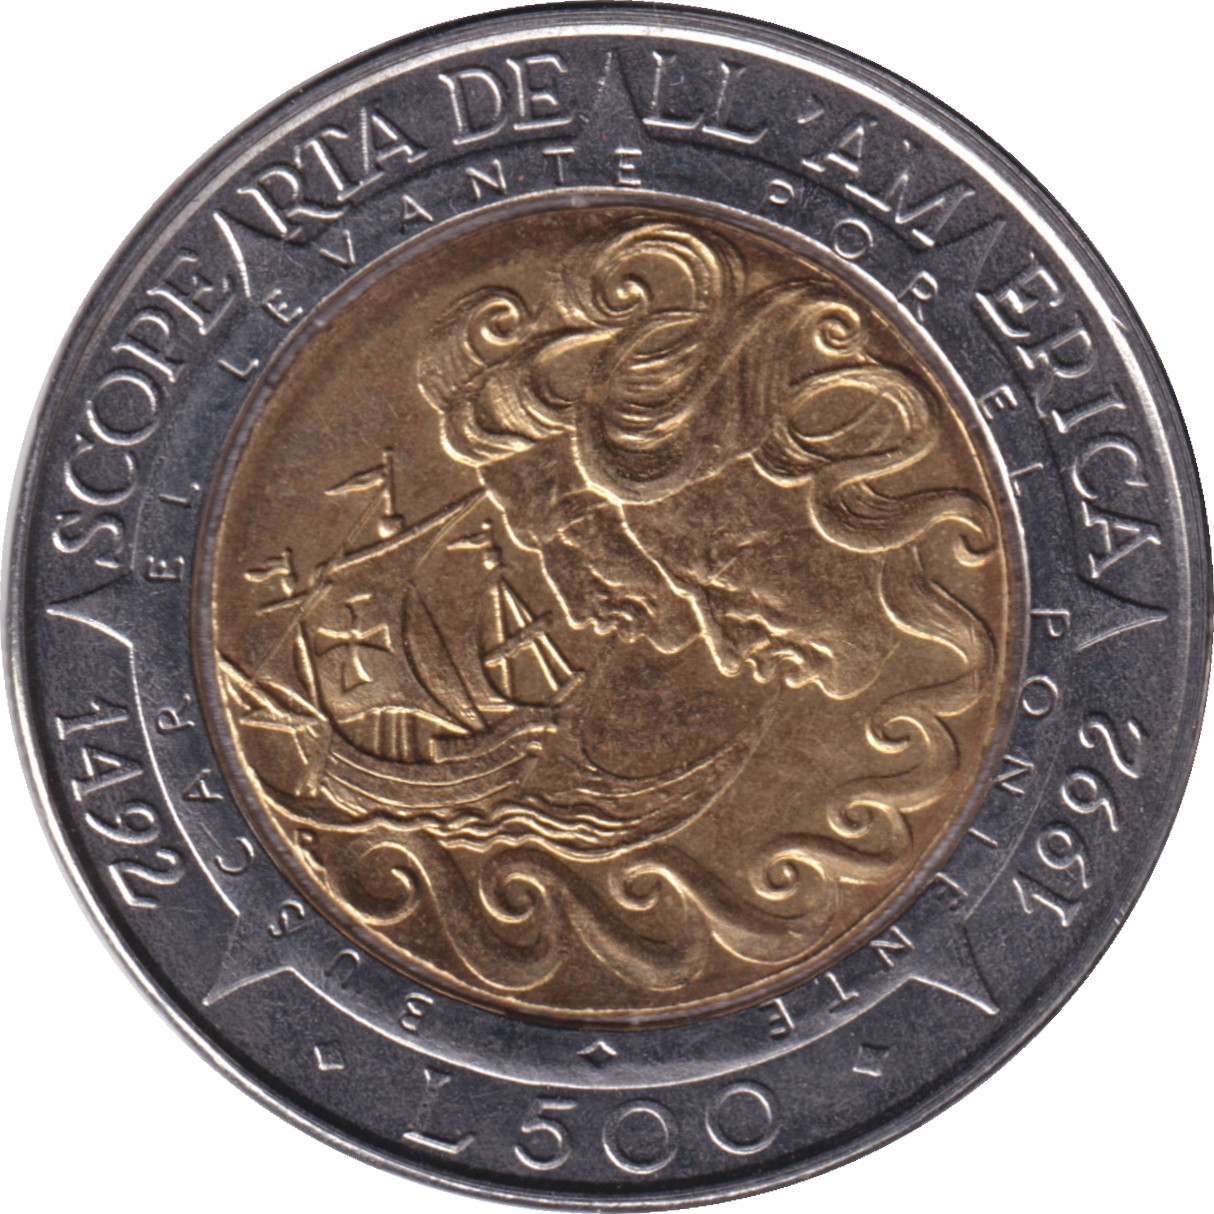 500 lire - Découverte des Amériques - 500 years